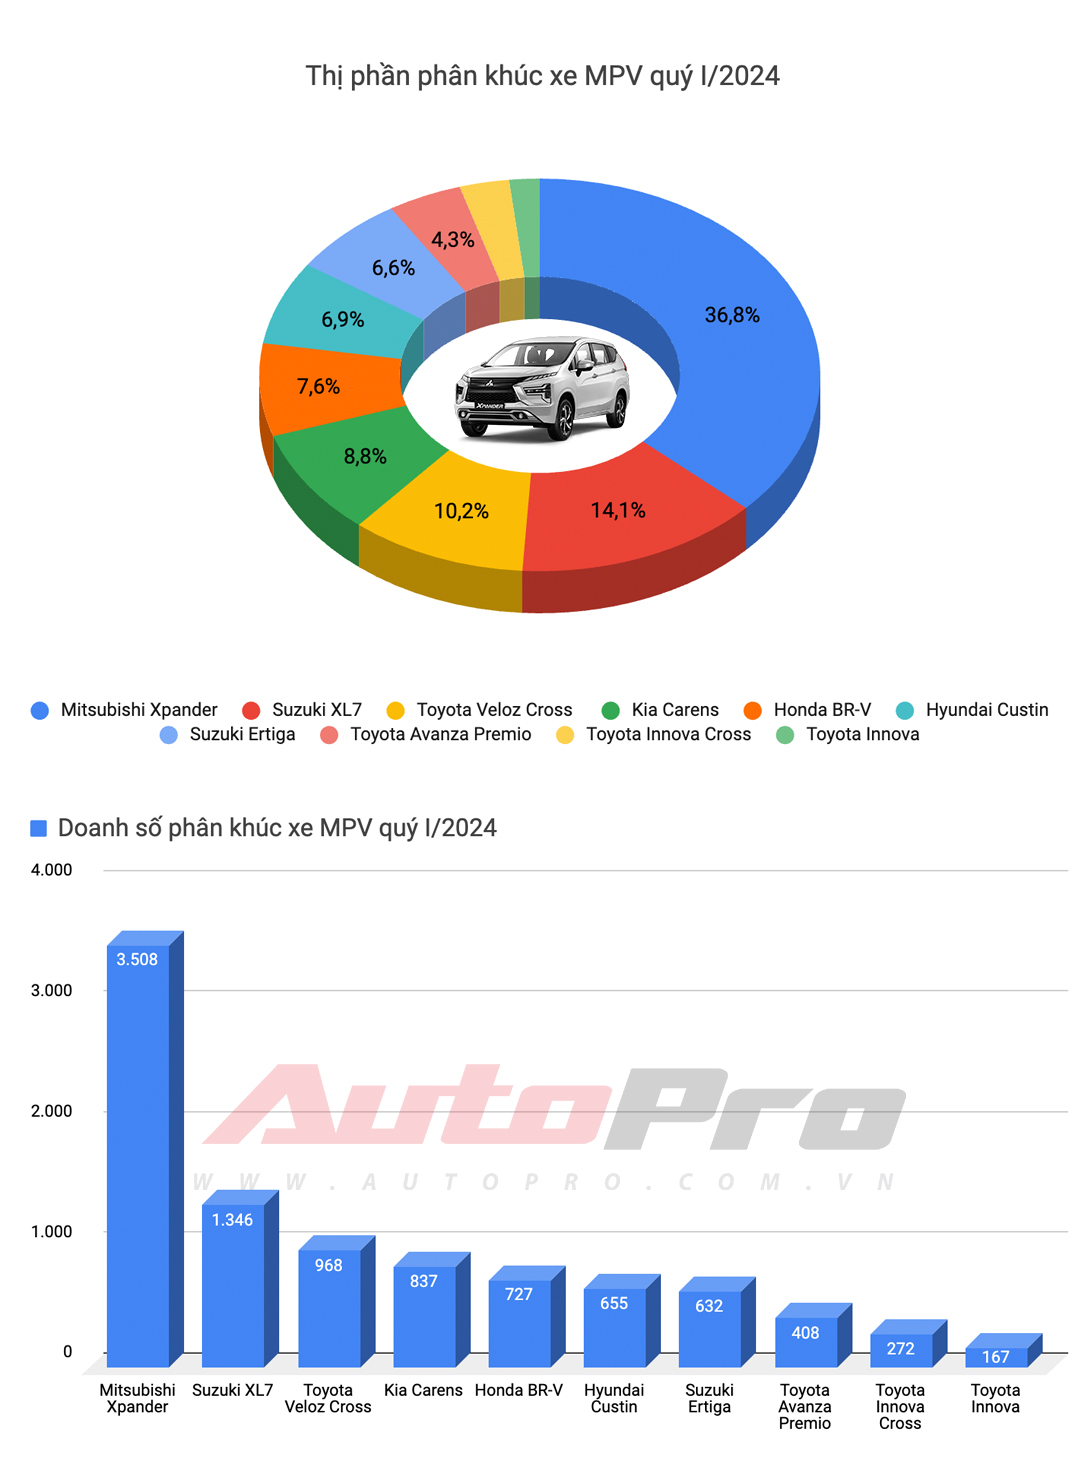 10 xe bán chạy nhất quý I/2024: HR-V và XL7 tạo đột biến, Toyota góp đúng 1 đại diện - ảnh 6